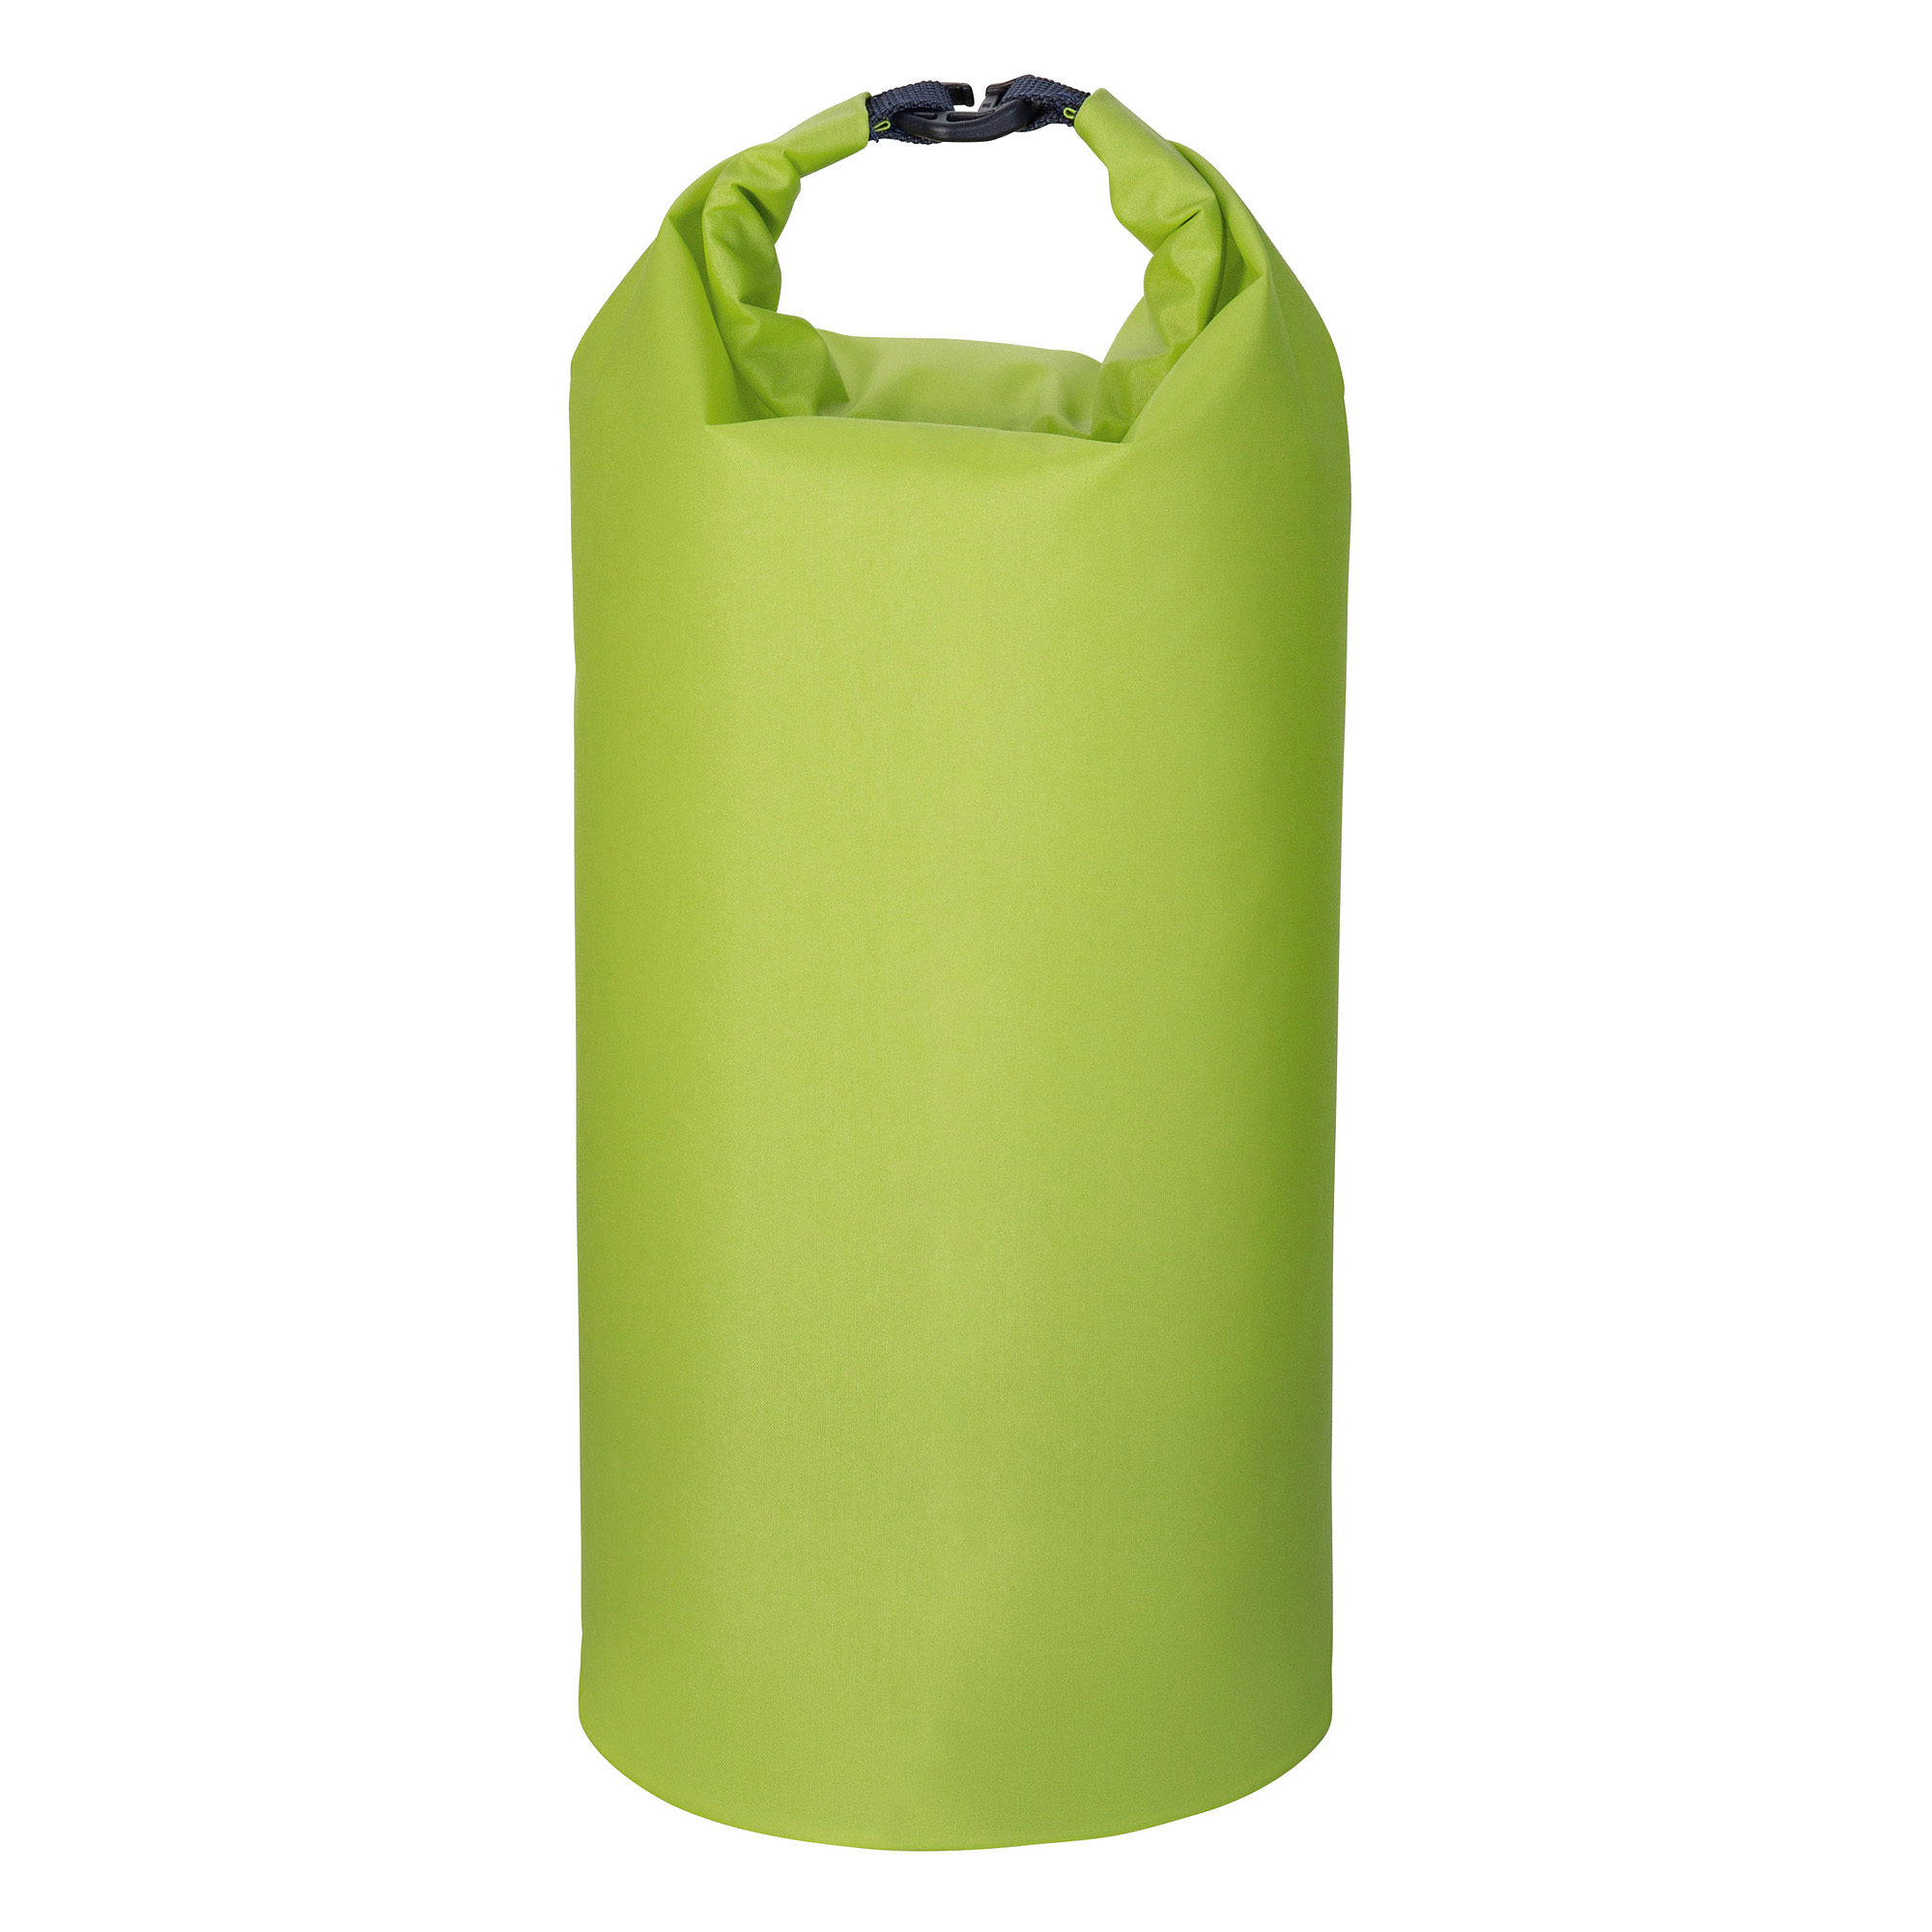 Tatonka WP Stuffbag Light 3,5l lime grün Rucksack-Zubehör 4013236382402